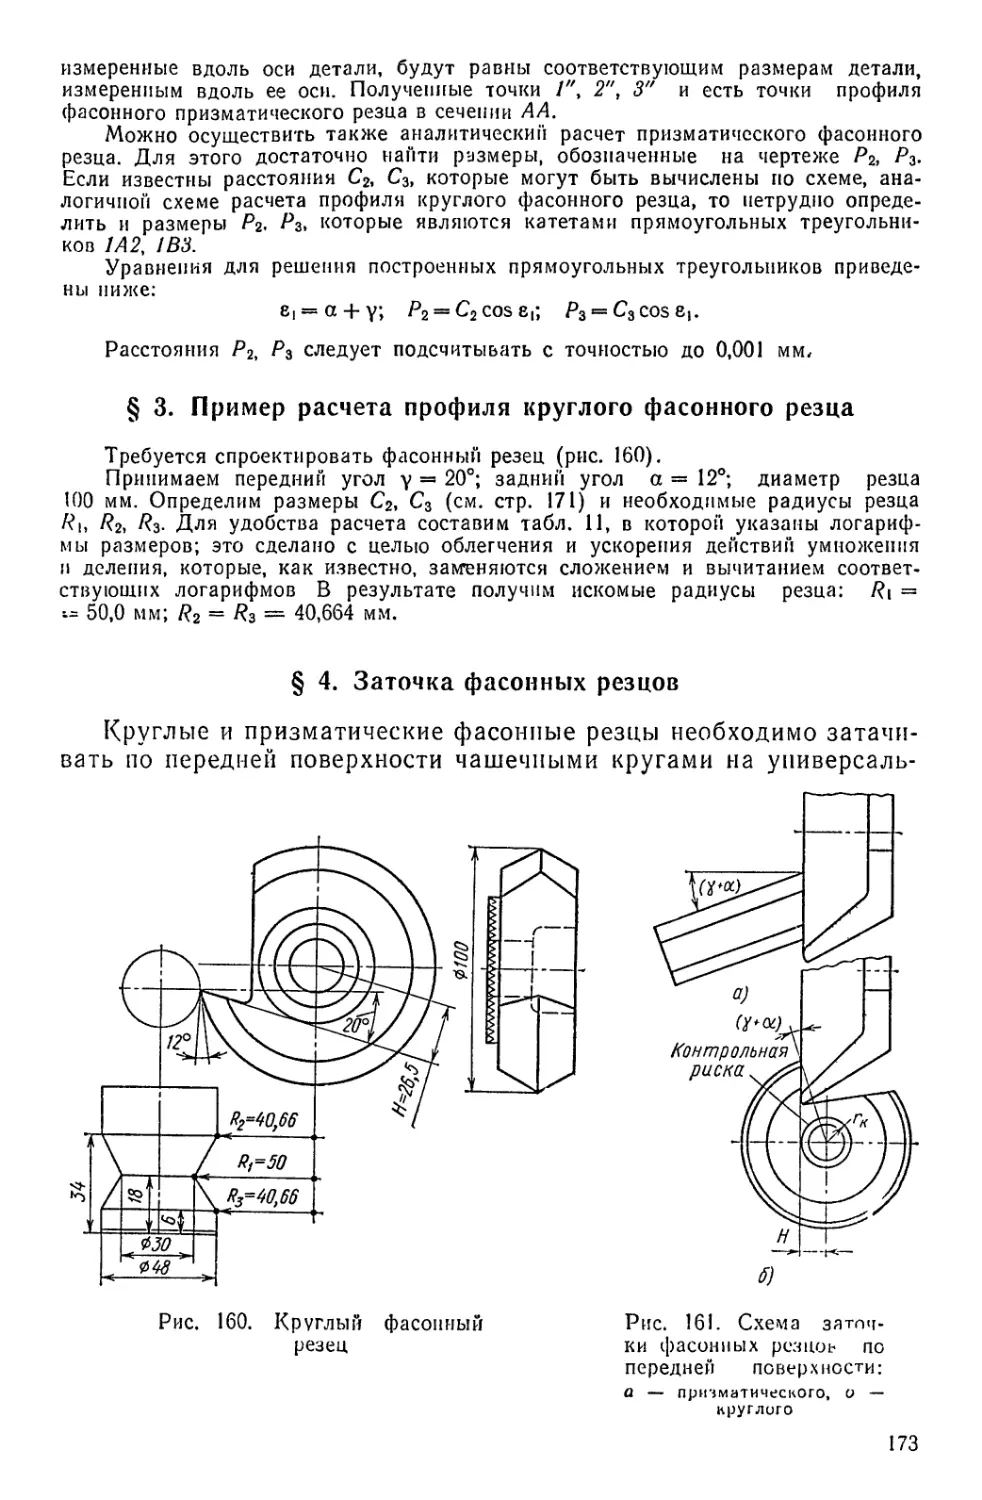 § 3, Пример расчета профиля круглого фасонного резца
§ 4. Заточка фасонных резцов